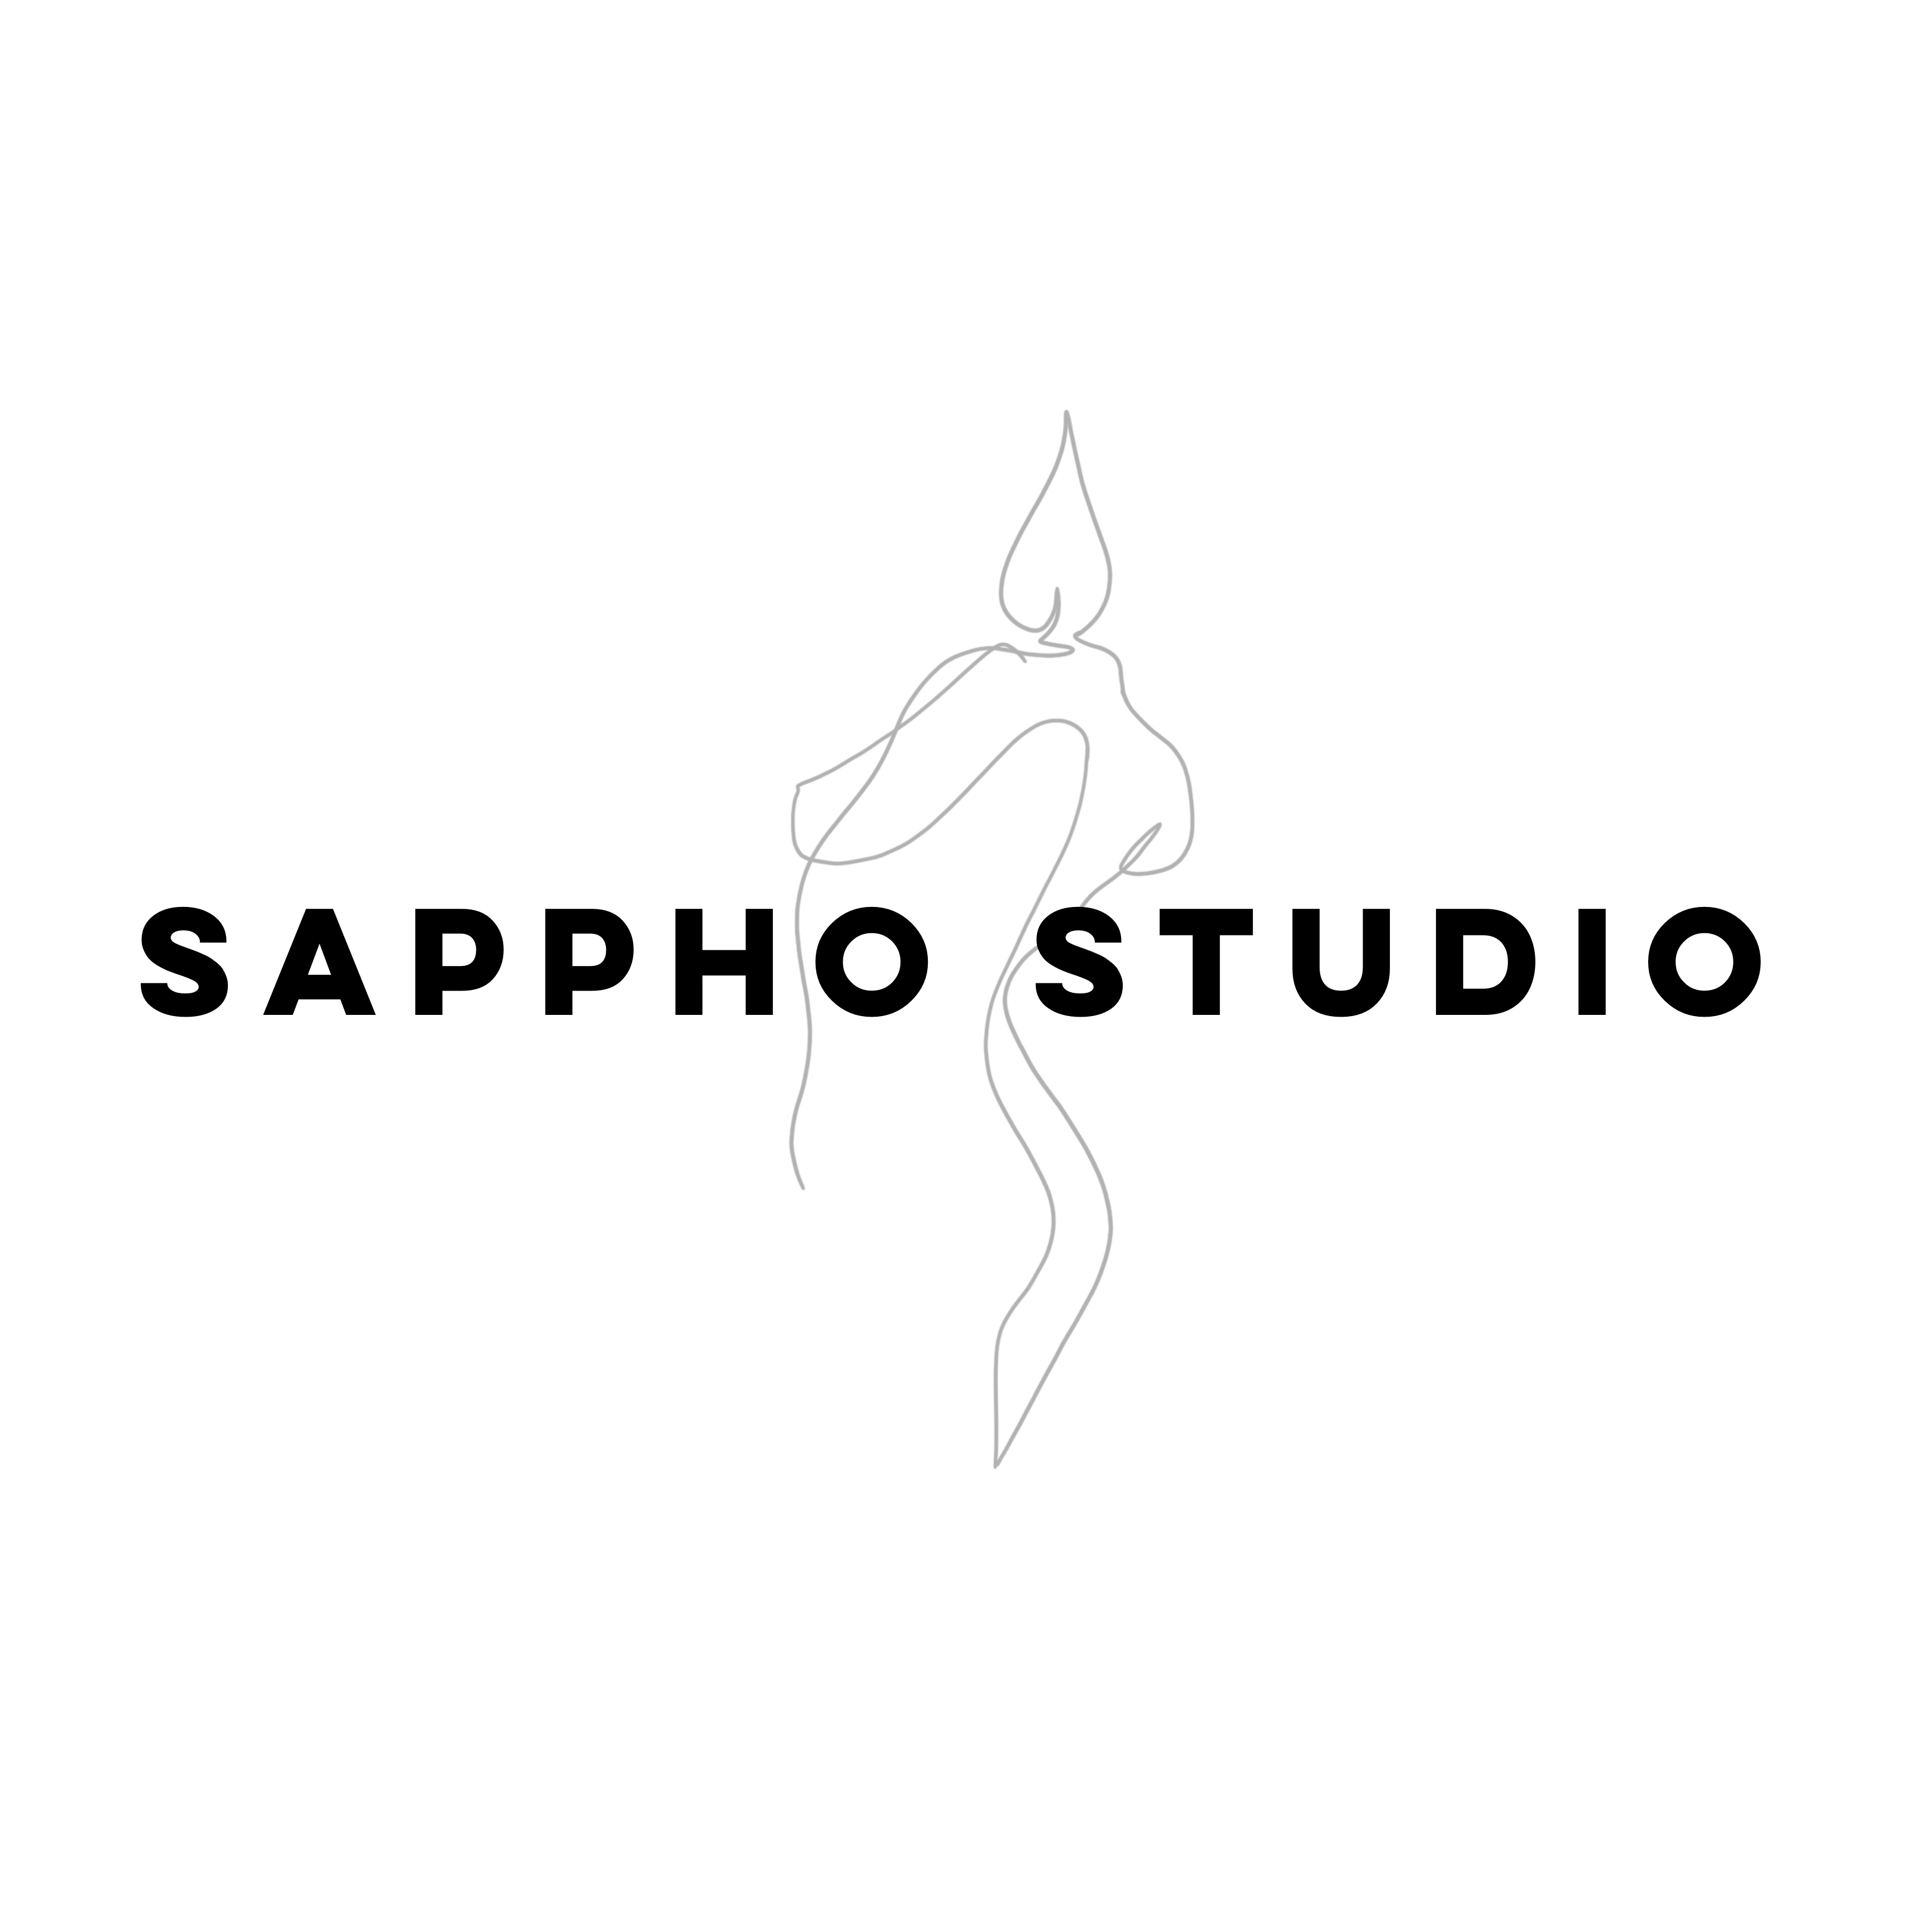 Sappho Studio